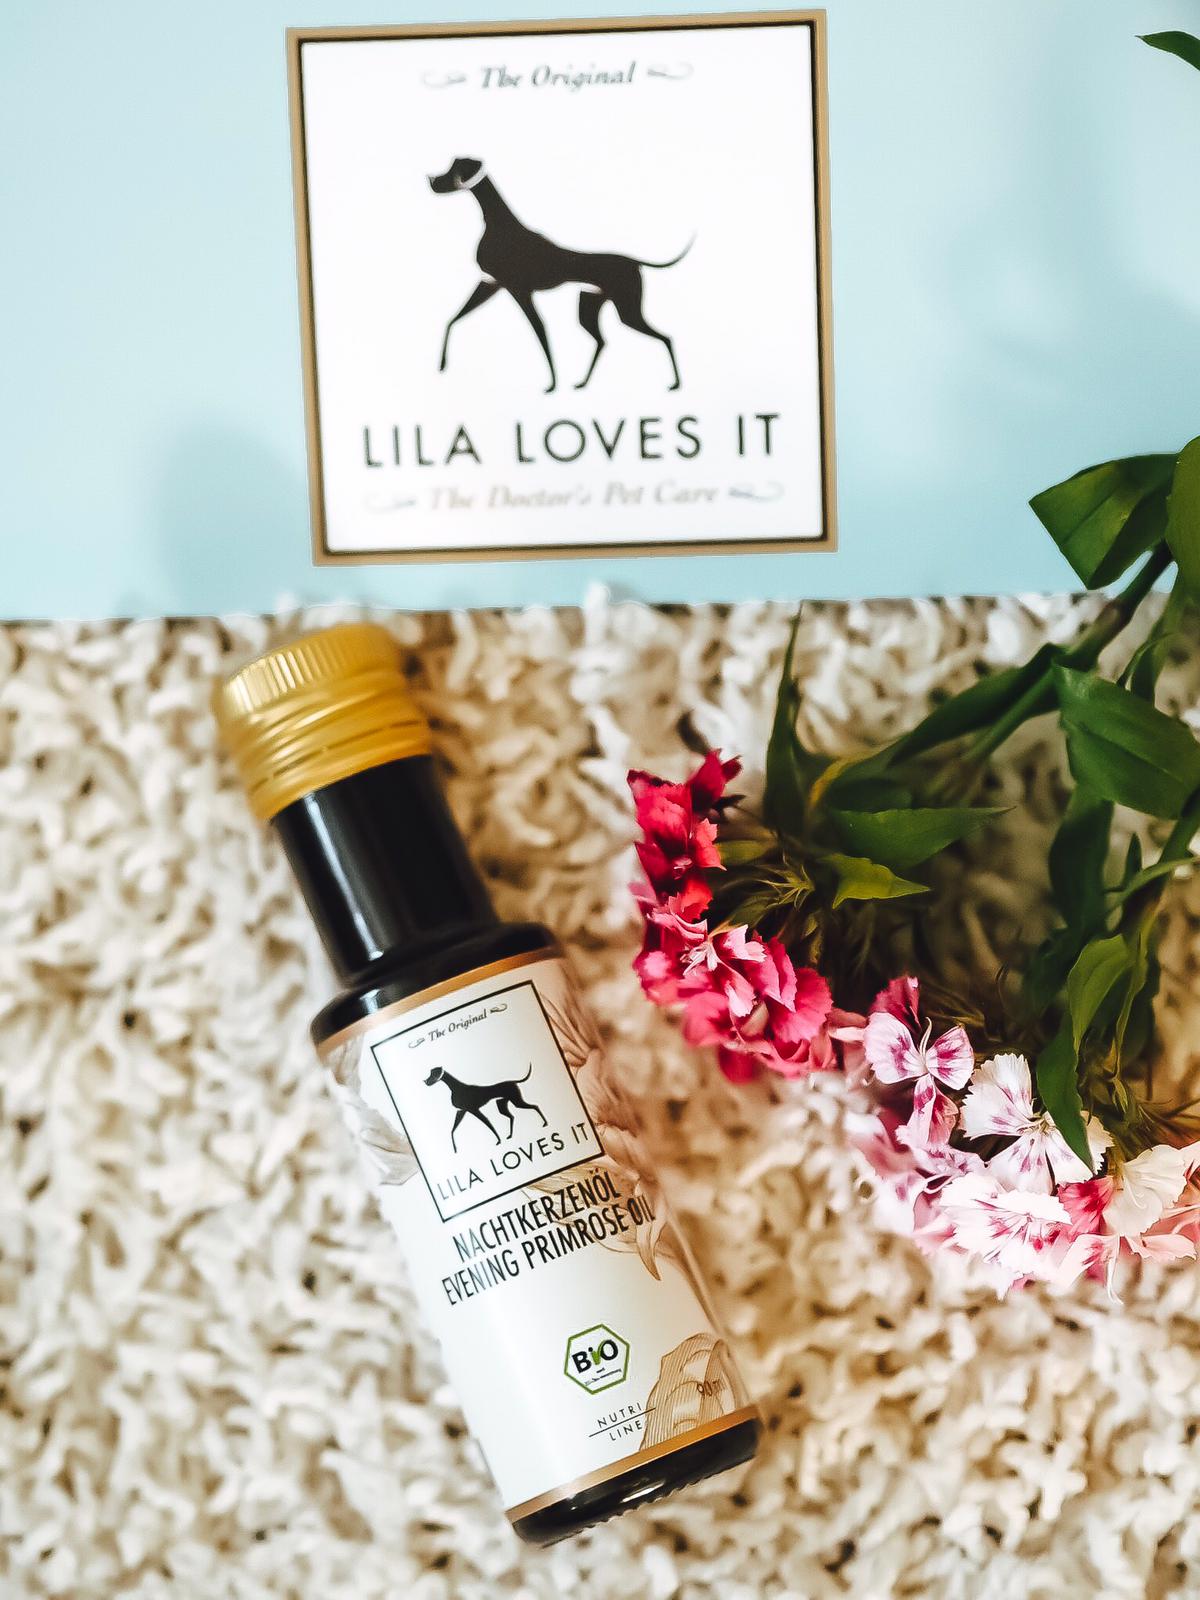 Alle tollen Produkte von Lila Loves It sind nachweisbar nur aus natürlichen Inhalten gefertigt. Hier mehr dazu in der Kategorie "Dog Stuff" auf dem Blog !